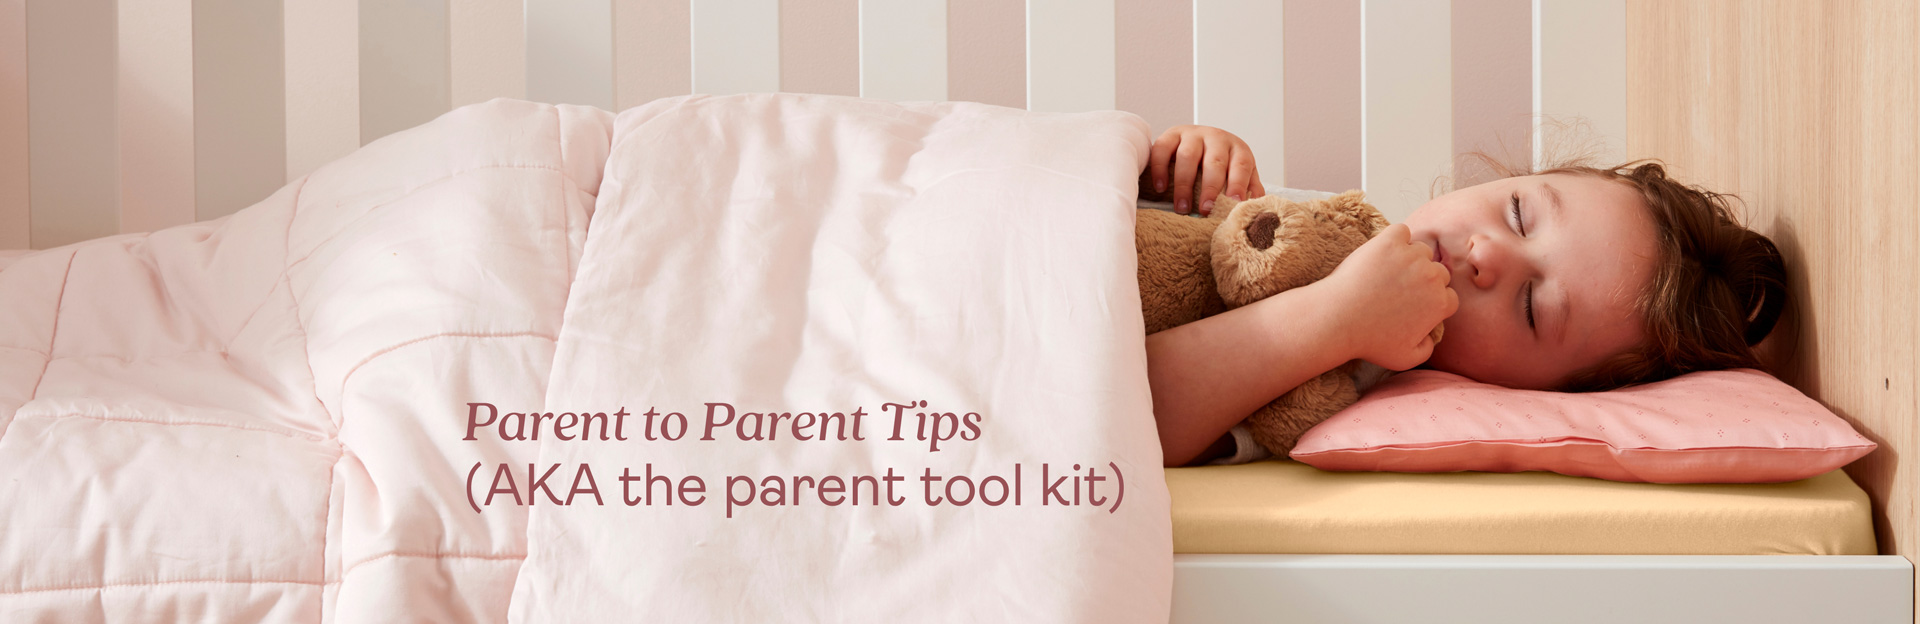 Parent to parent tips